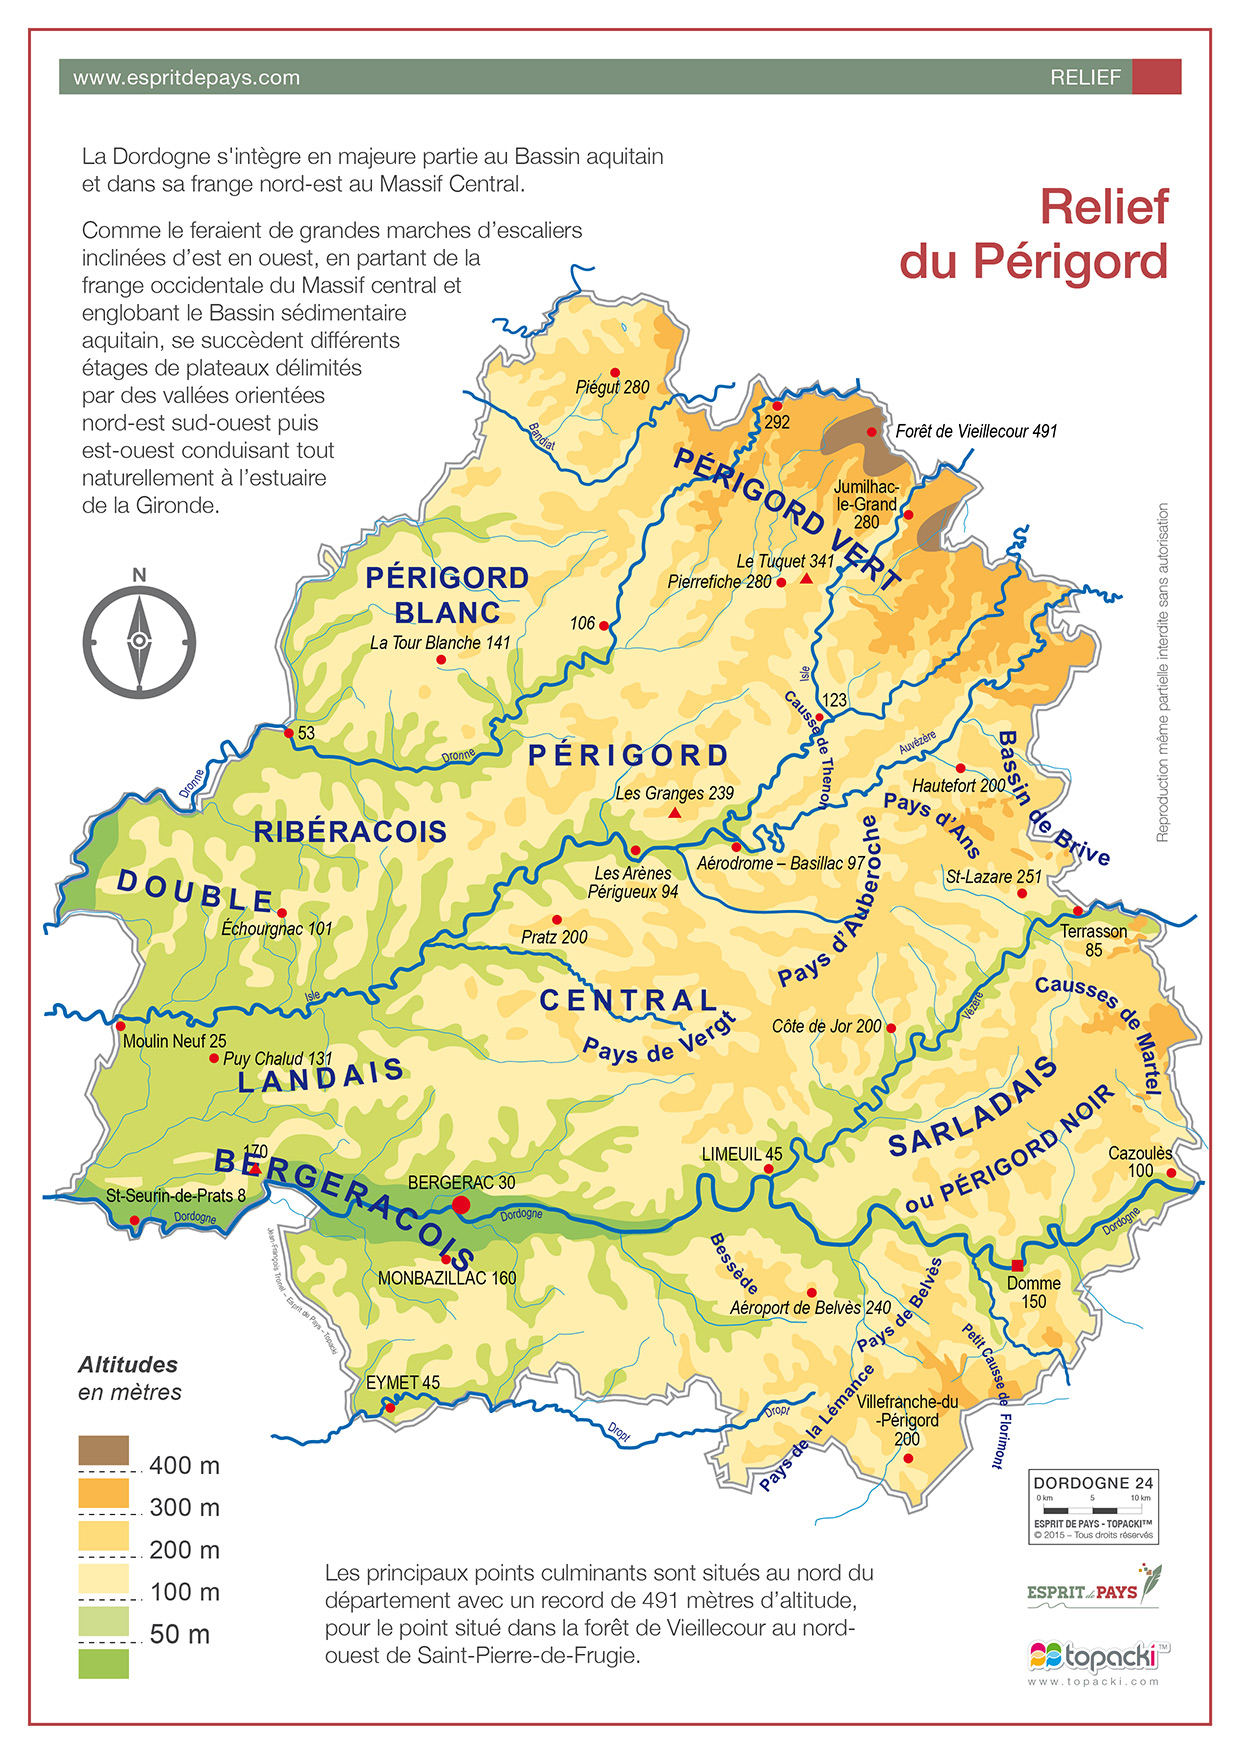 Cartographie : relief du Périgord